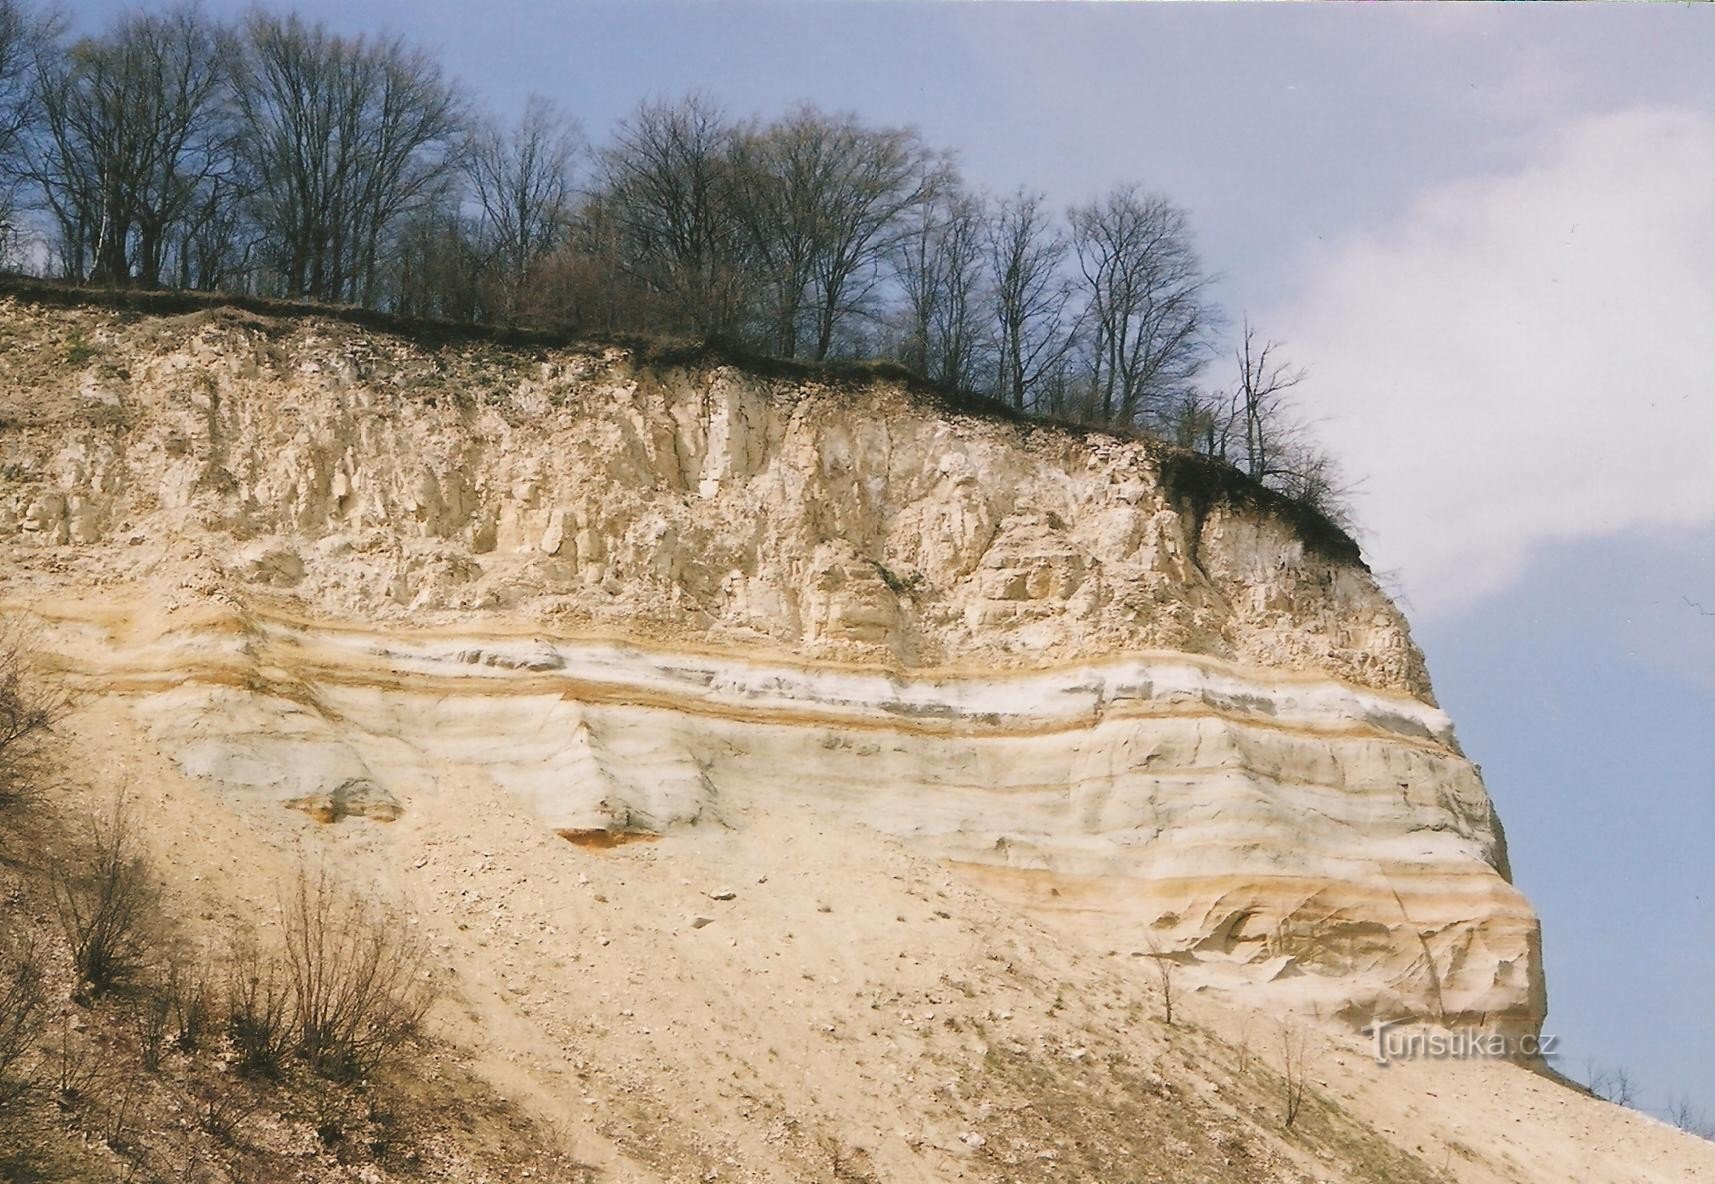 Malý Chlum - perfil geológico